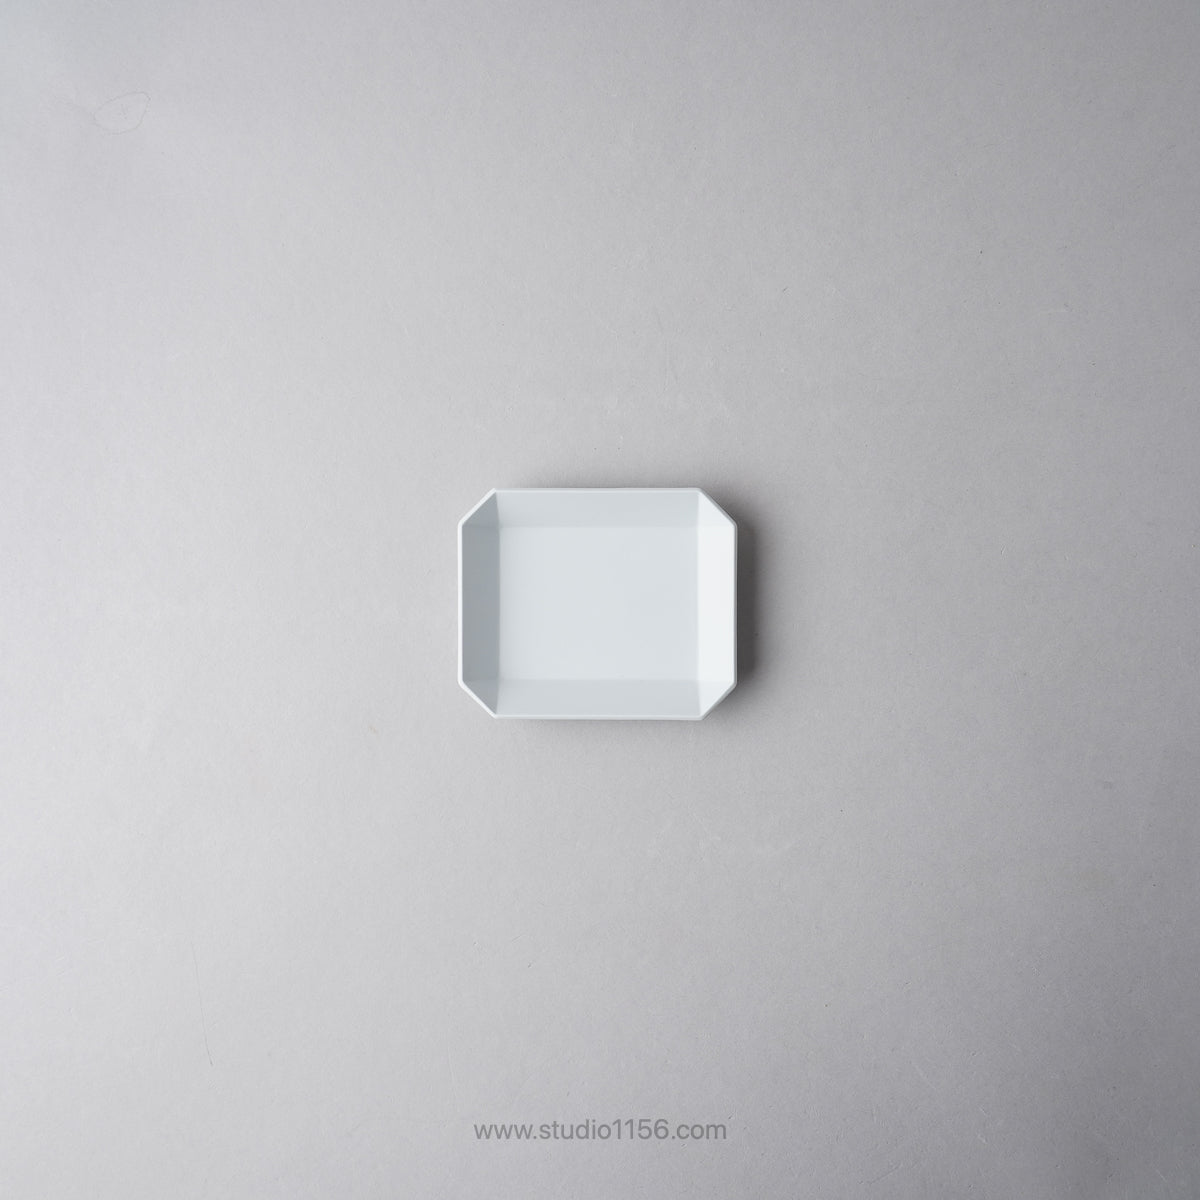 有田焼 スクエアプレート プレーン グレー / TY Square Plate Plain Gray 90 1616 / Arita Japan Studio1156